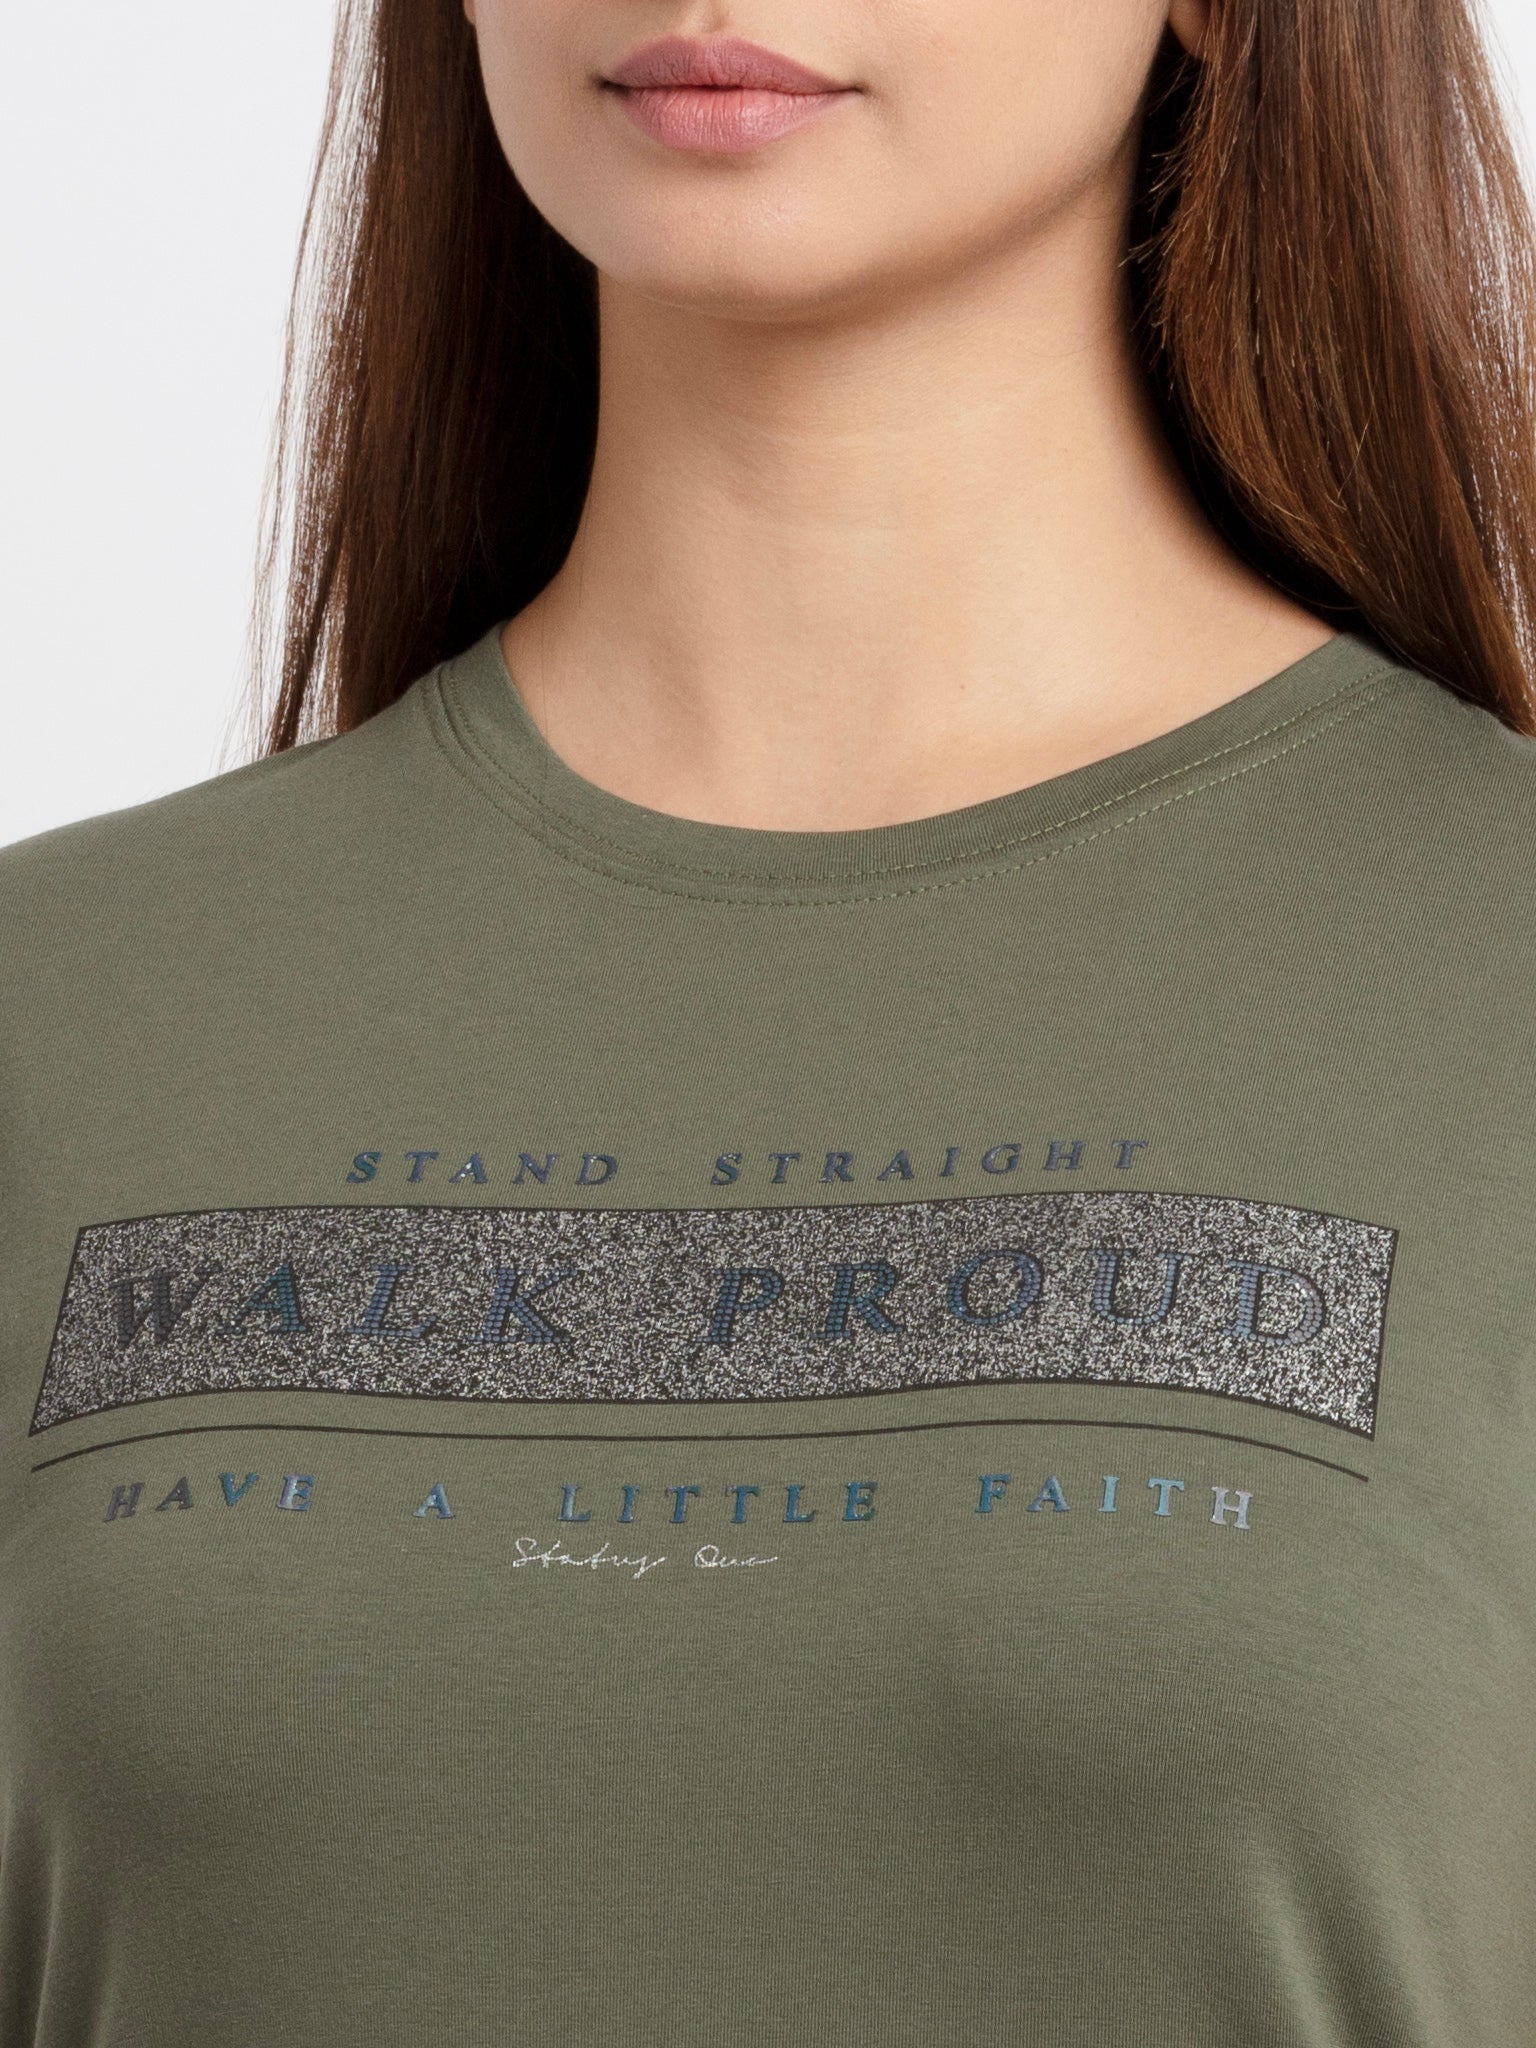 Women's Printed Round Neck T-Shirt